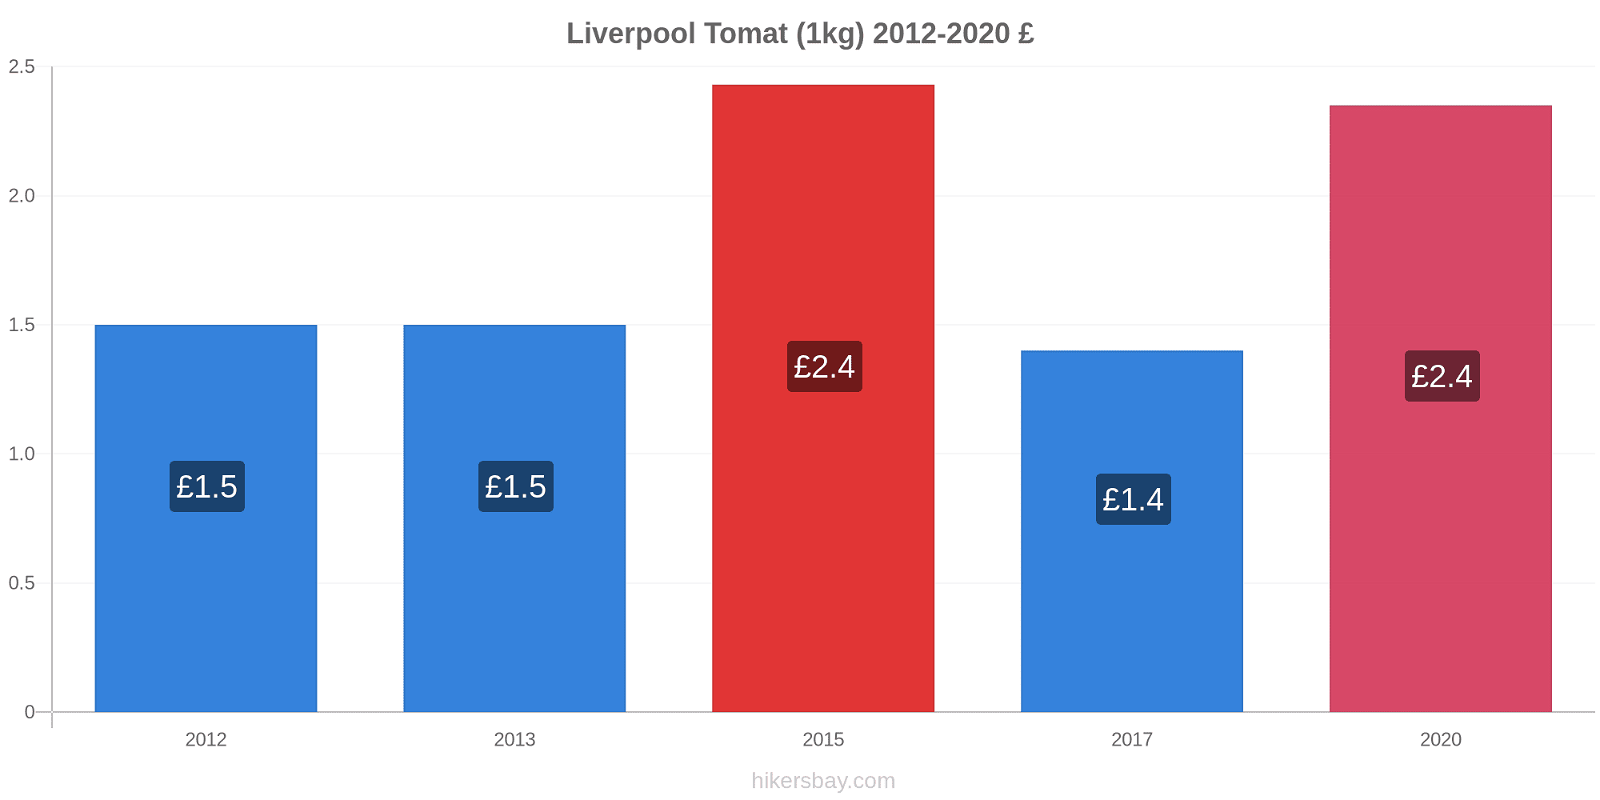 Liverpool prisændringer Tomat (1kg) hikersbay.com